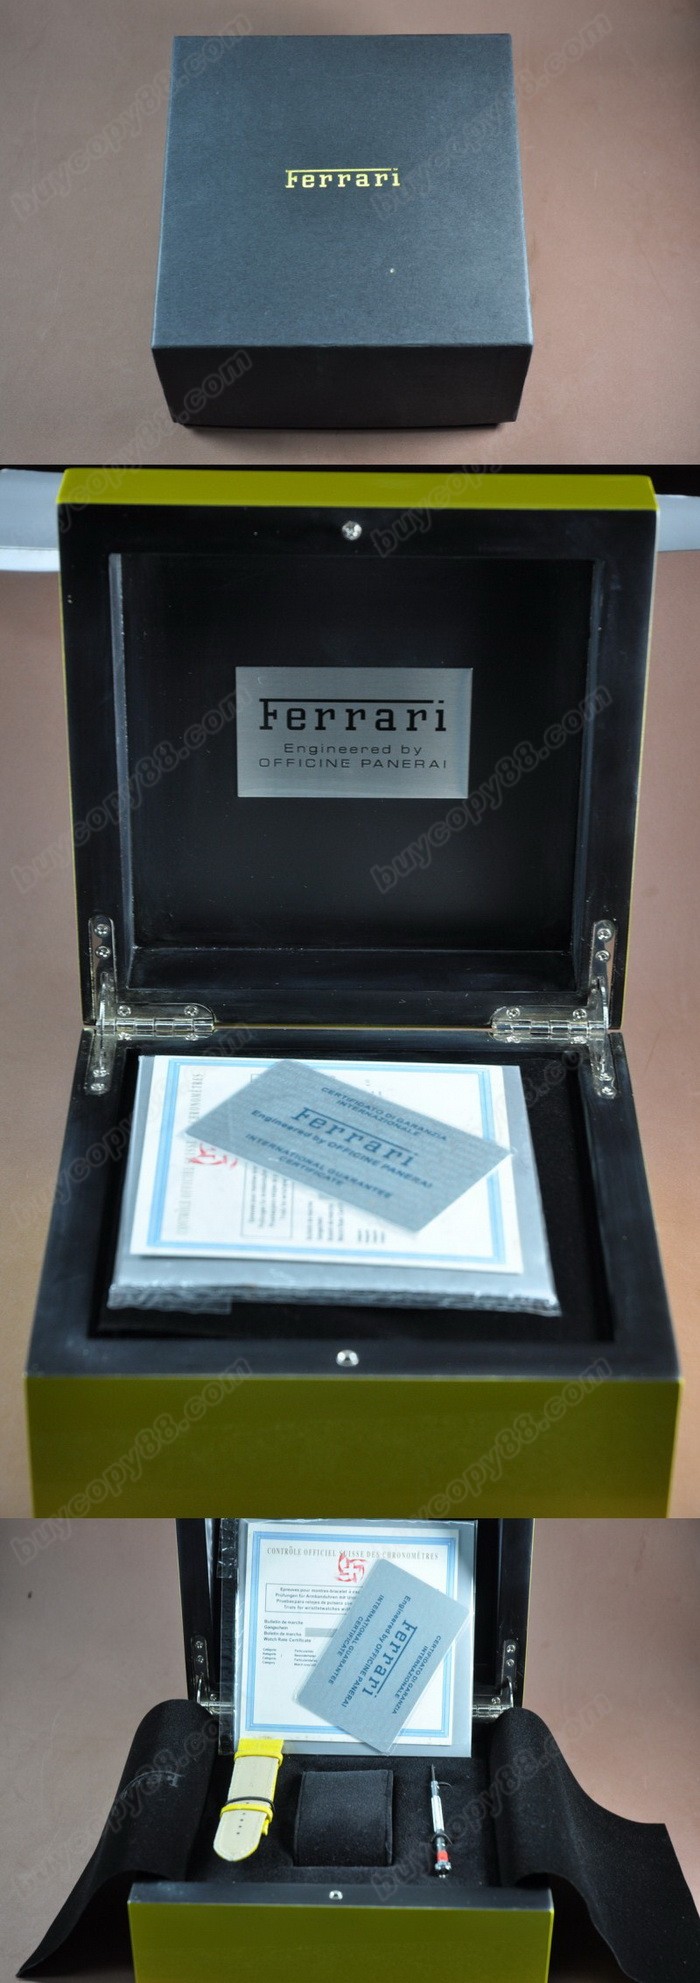 Ferrari原廠錶盒-送禮講究-收藏把玩首選0